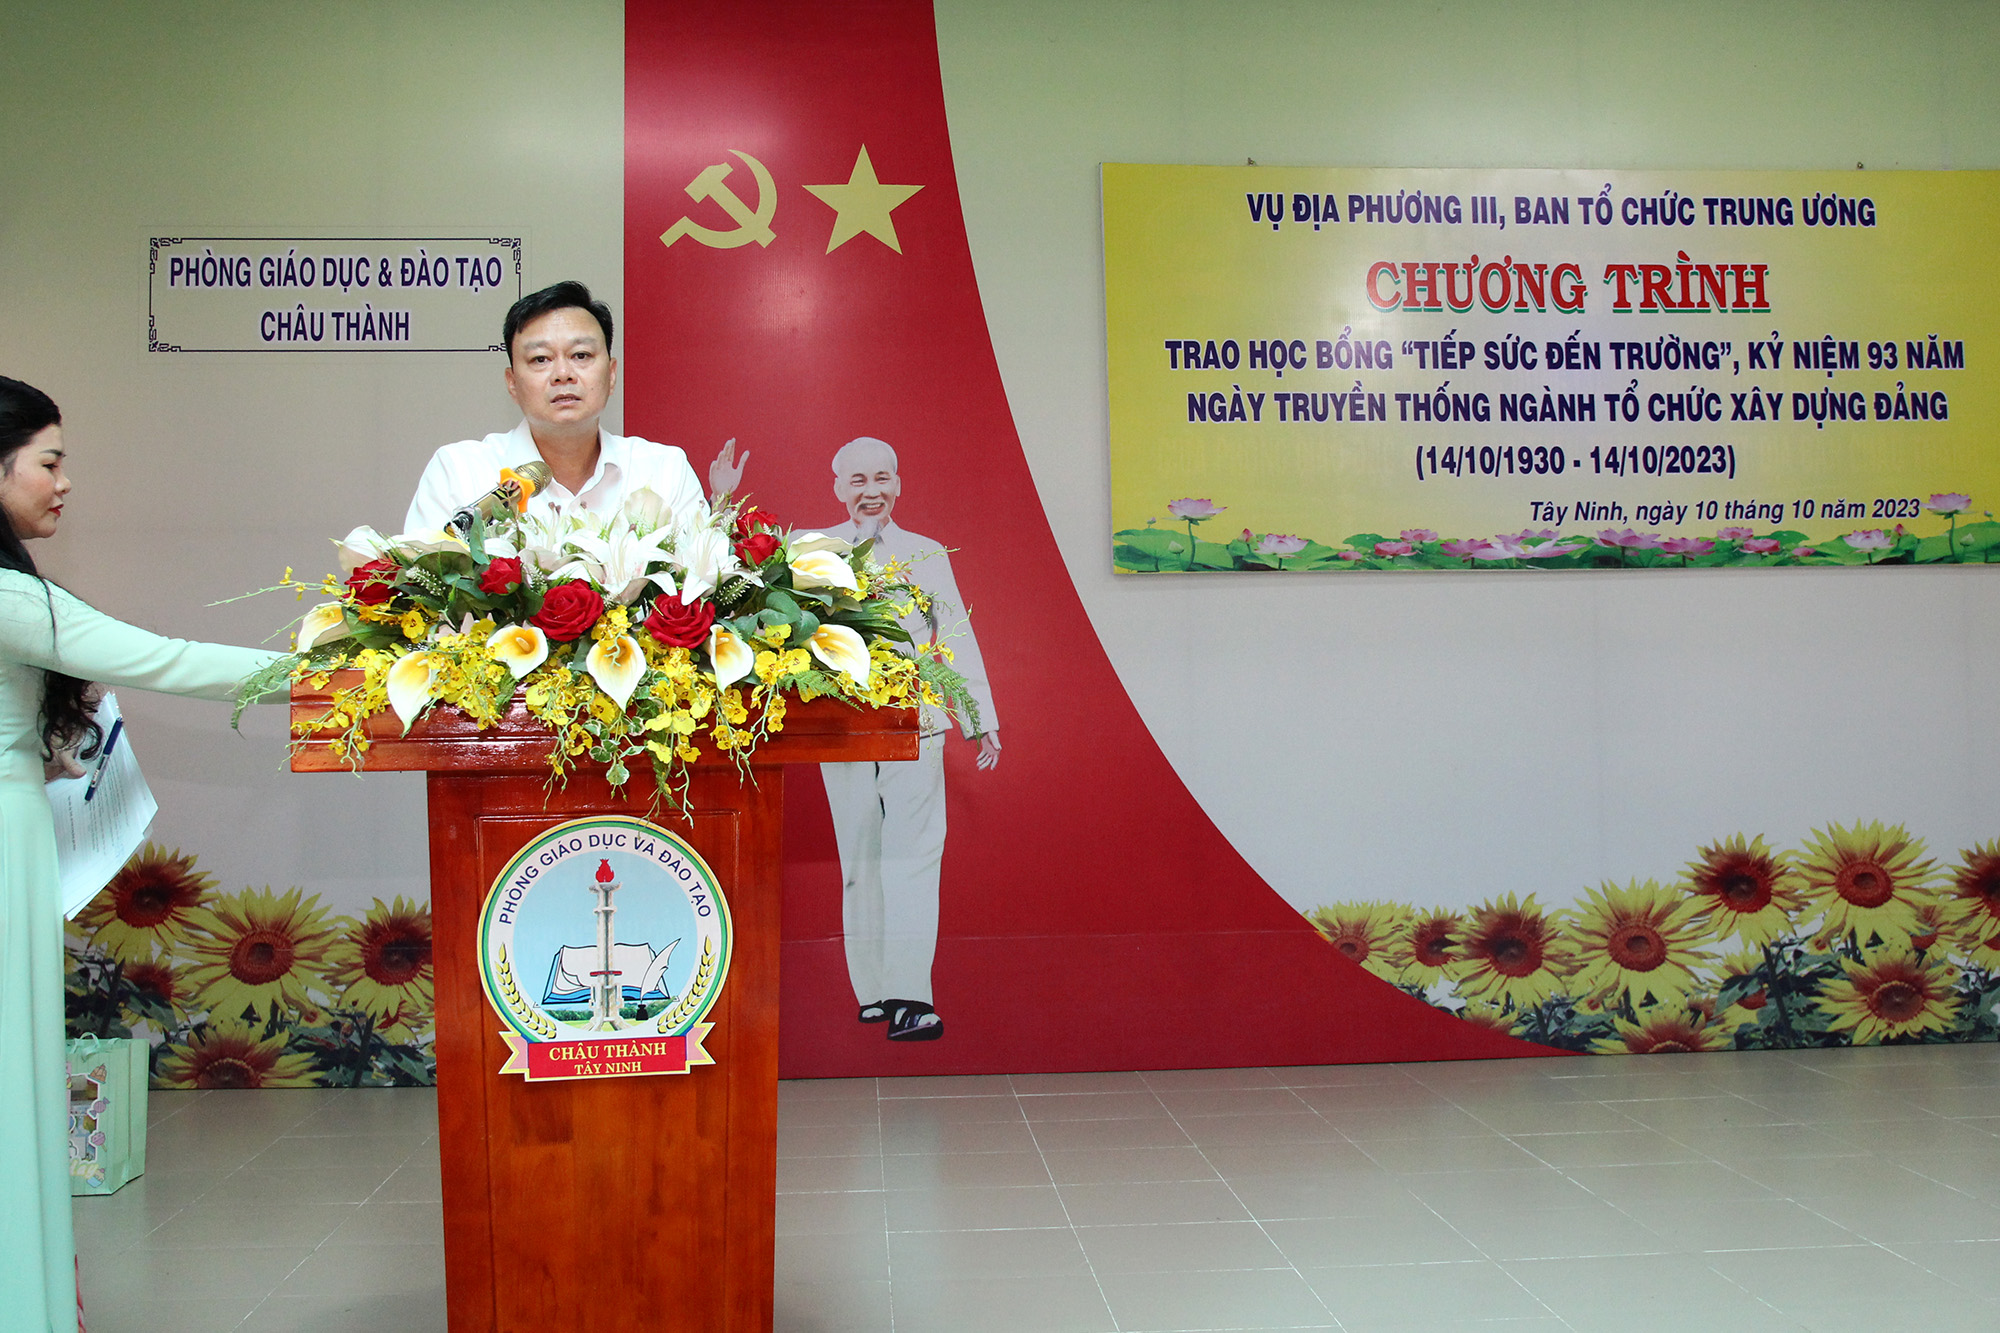 Đồng chí Nguyễn Văn Phóng – Vụ trưởng Vụ Địa phương III phát biểu tại buổi lễ trao học học bổng “Tiếp sức đến trường” tại huyện Châu Thành, tỉnh Tây Ninh (Ảnh: H.Hào).